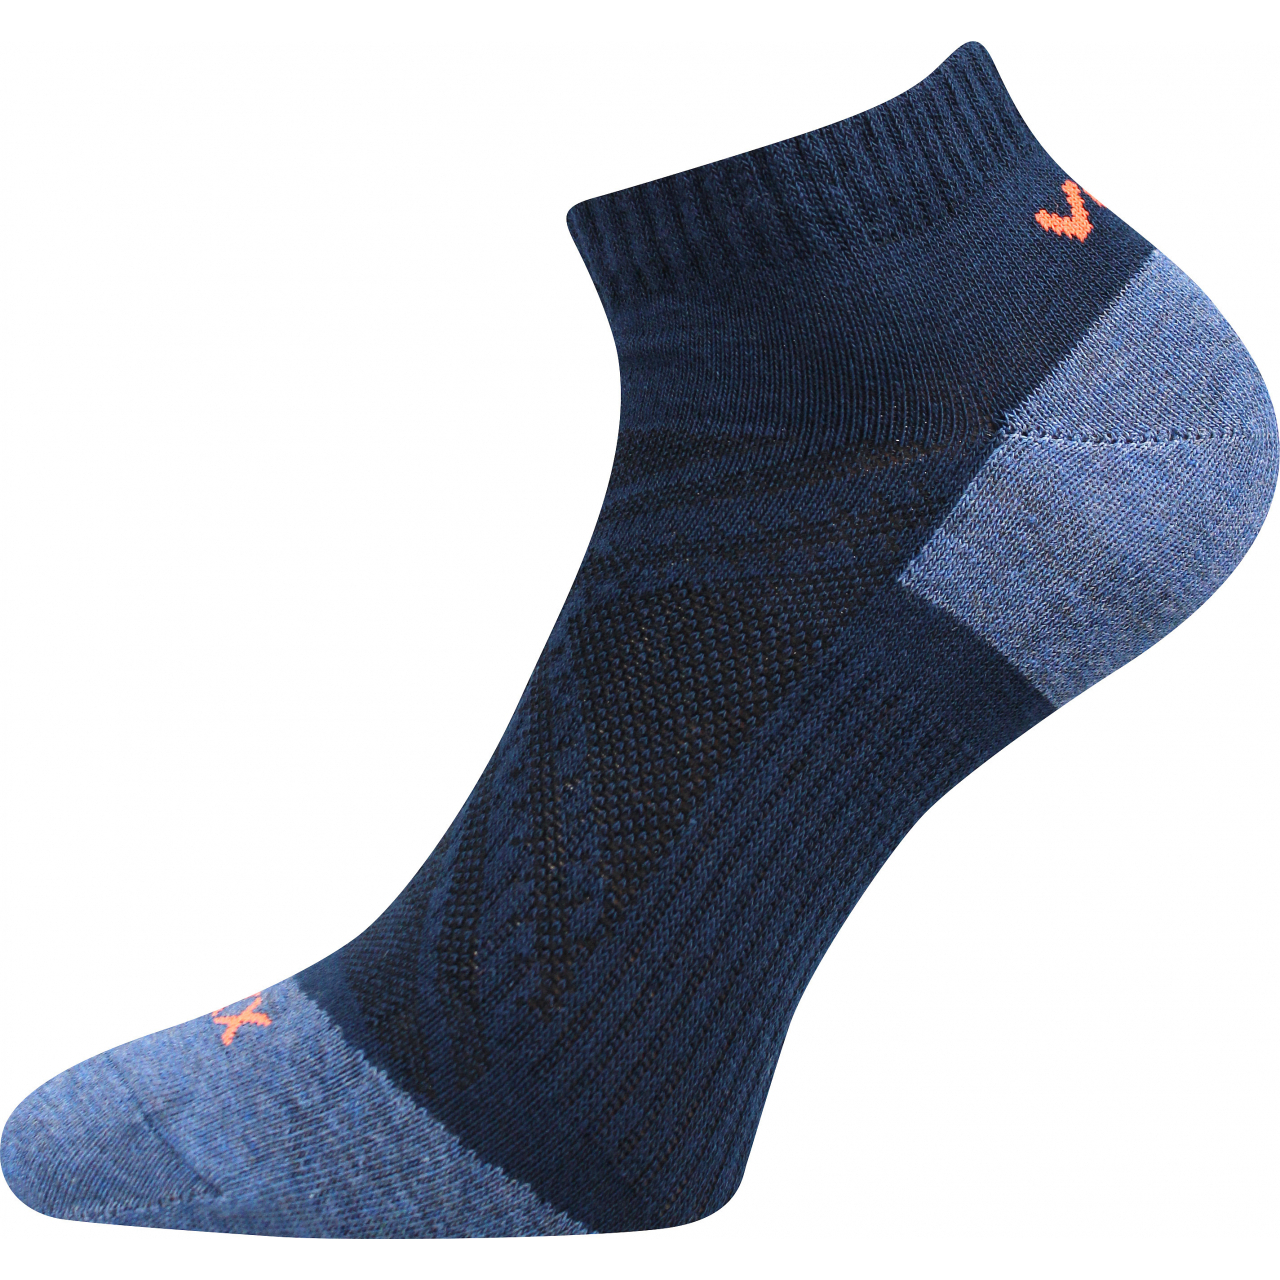 Ponožky slabé unisex Voxx Rex 15 - tmavě modré, 43-46